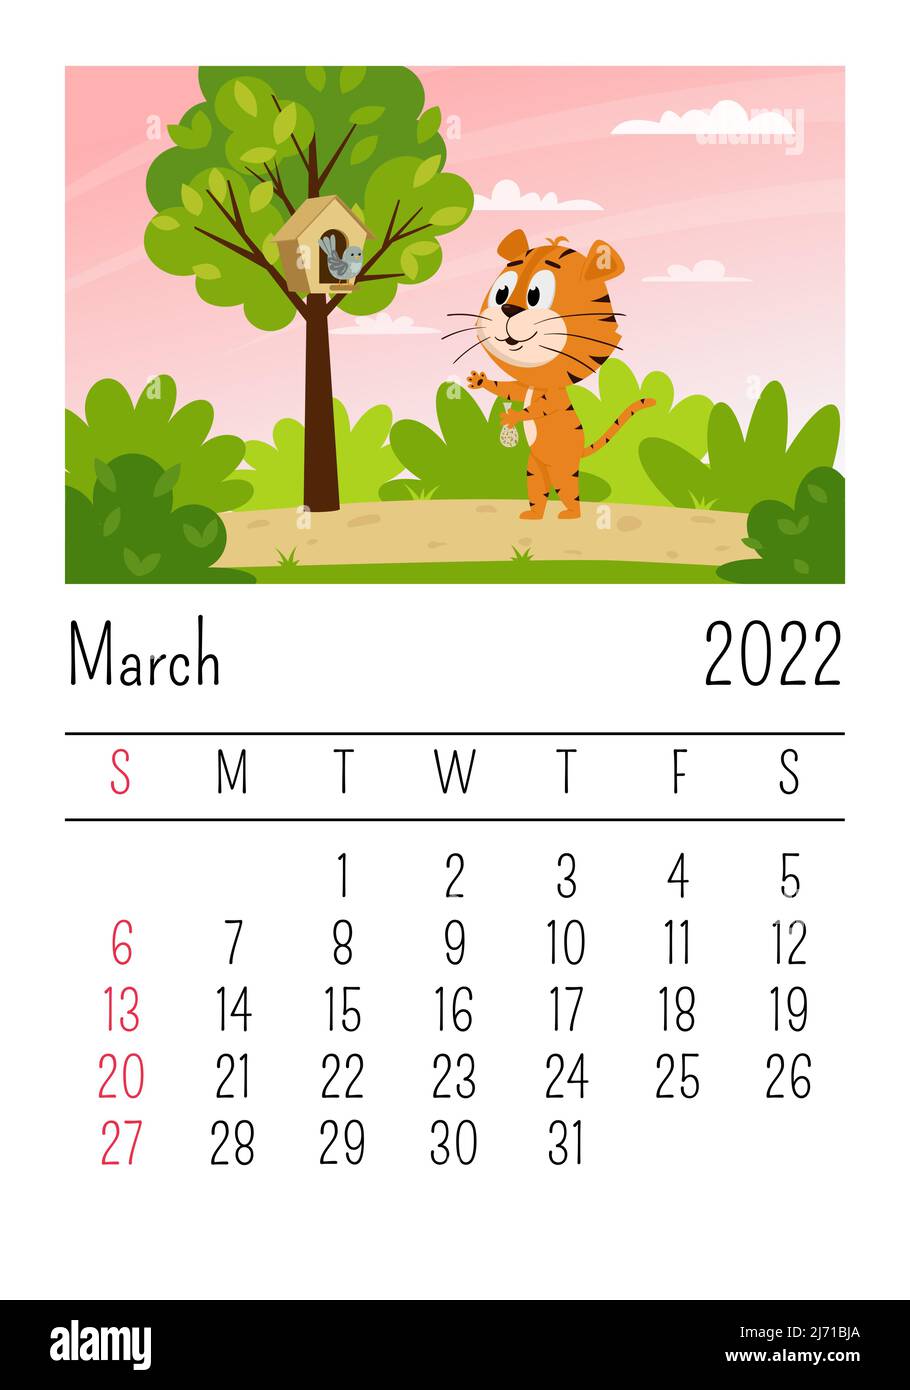 Plantilla de diseño de calendario para 2022, el año del tigre según el calendario  chino o oriental, con una ilustración del tigre. mesa horizontal con  calendario para 2022. vector